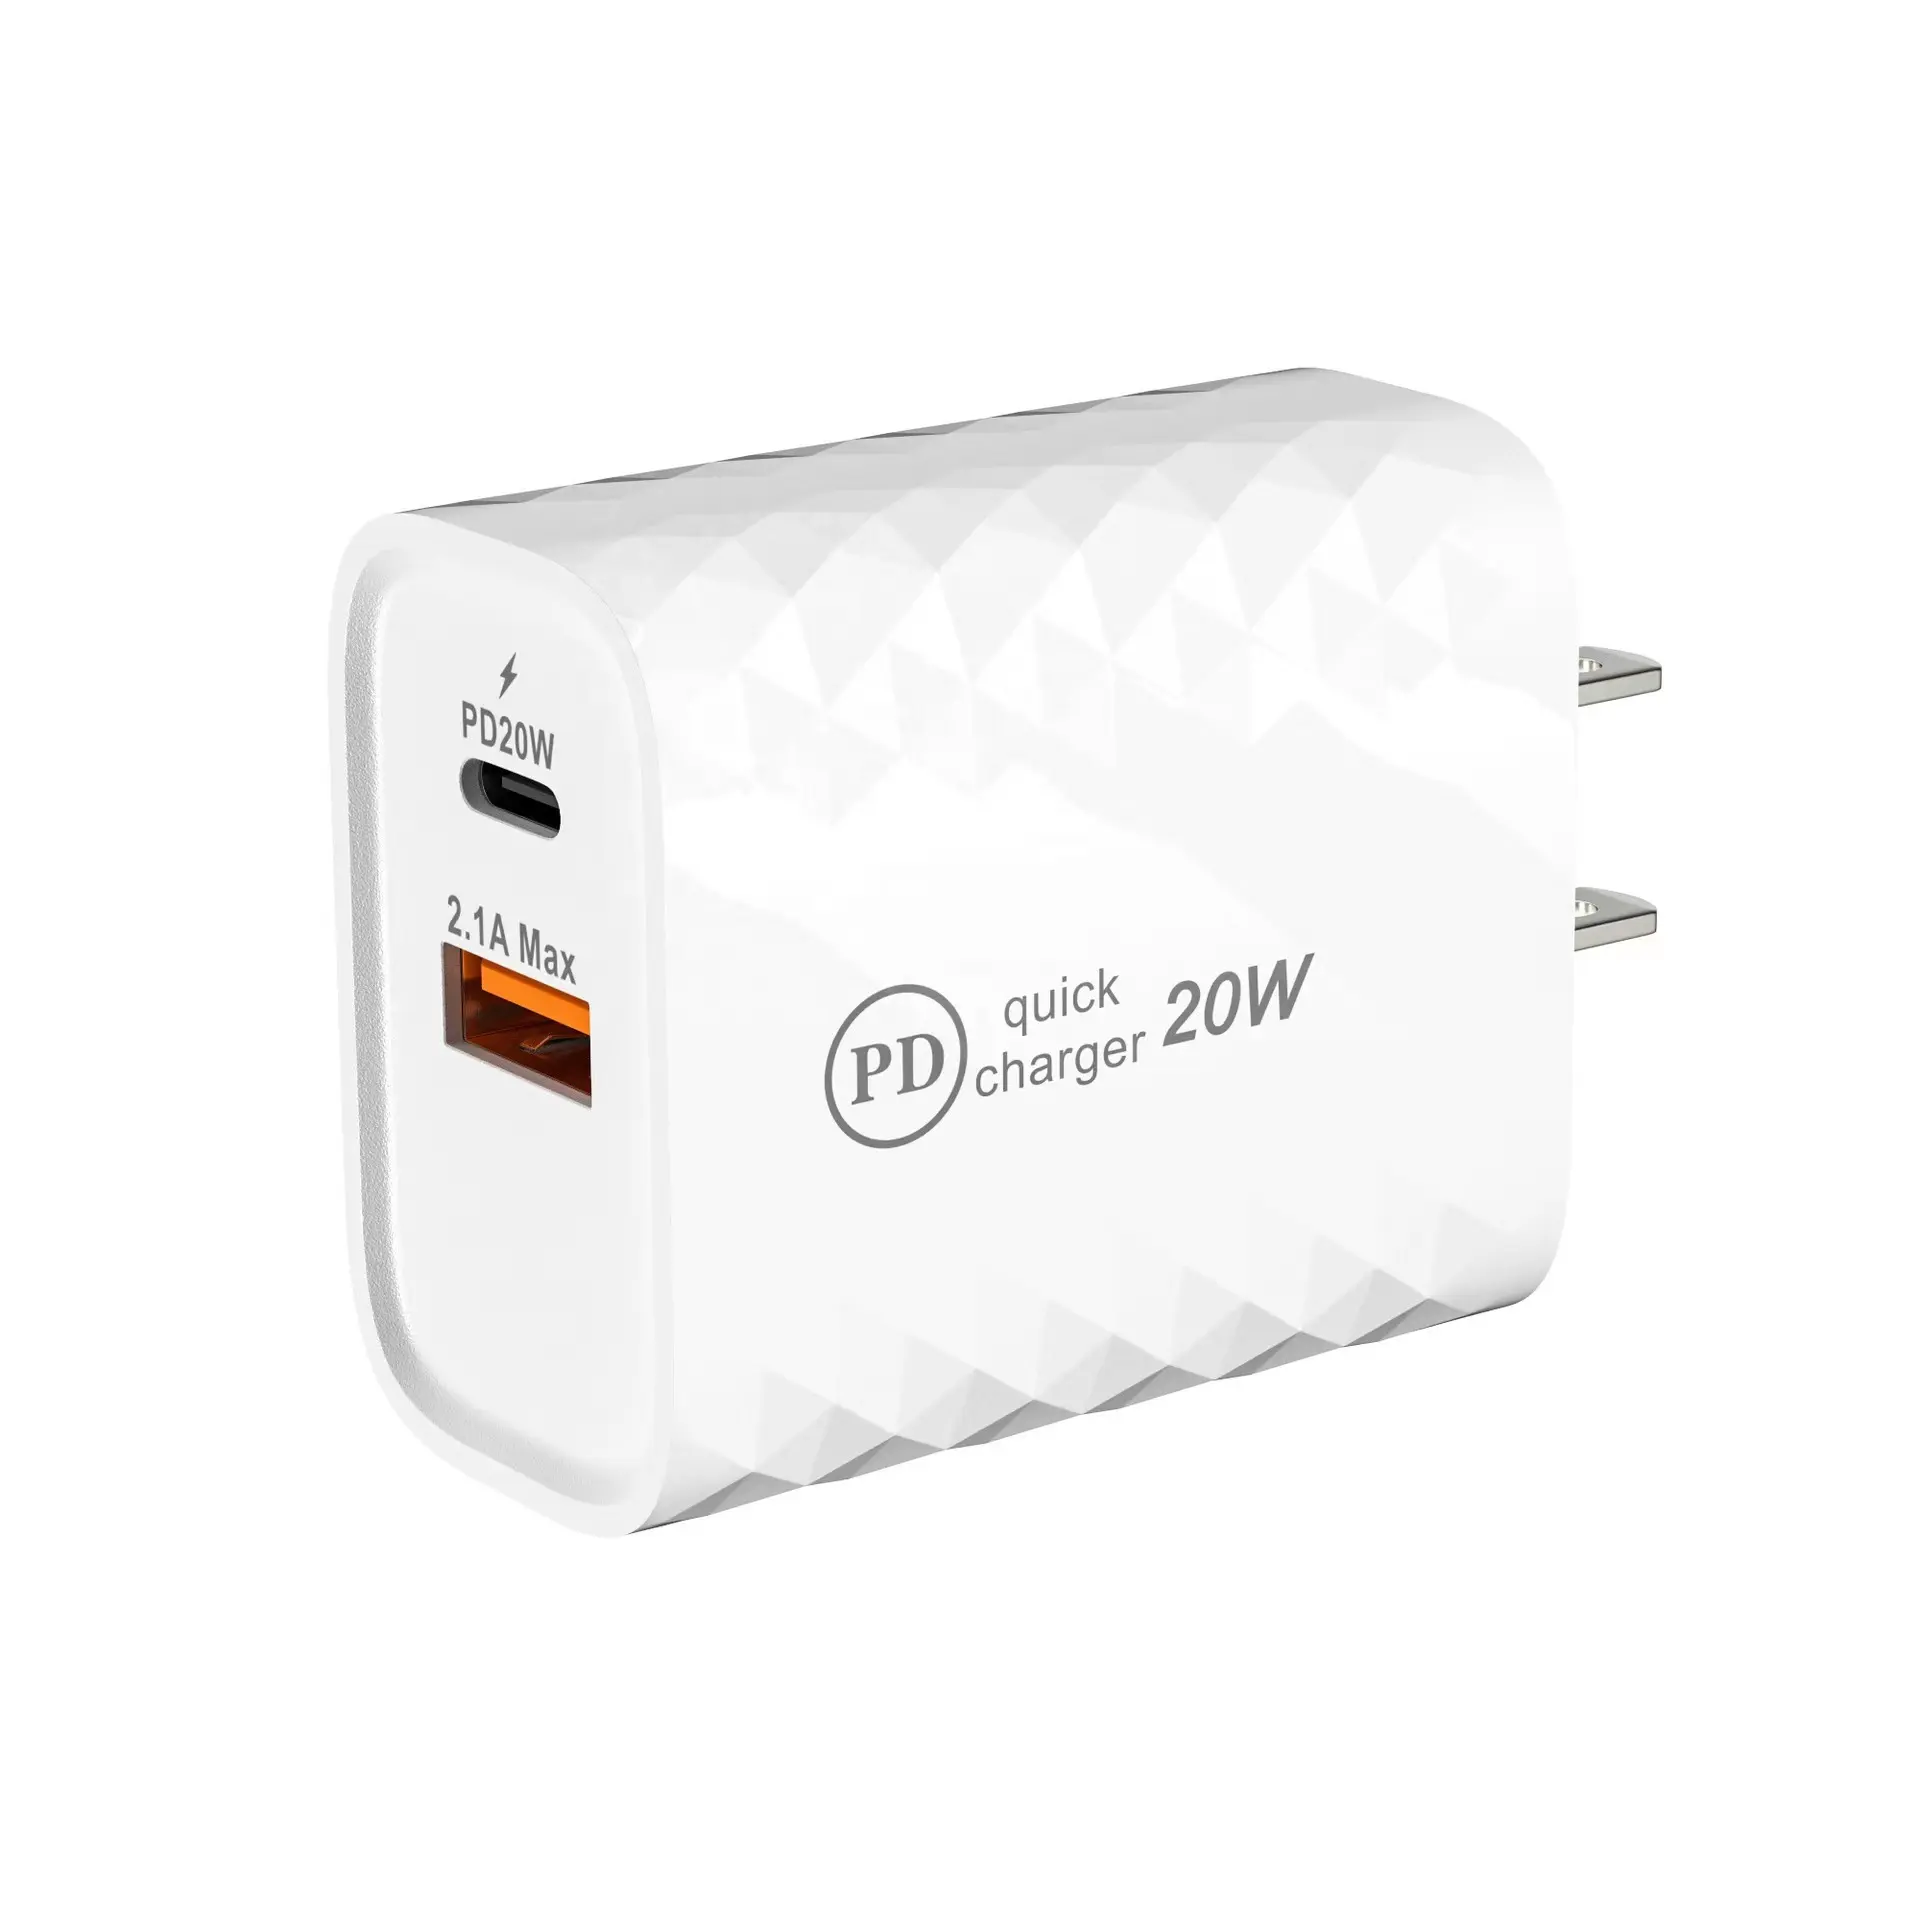 2022 새로운 제품 휴대용 usb 충전 USB 유형 C 5v4a 20W 빠른 충전기 삼성 벽 충전기 usb 홈 충전기